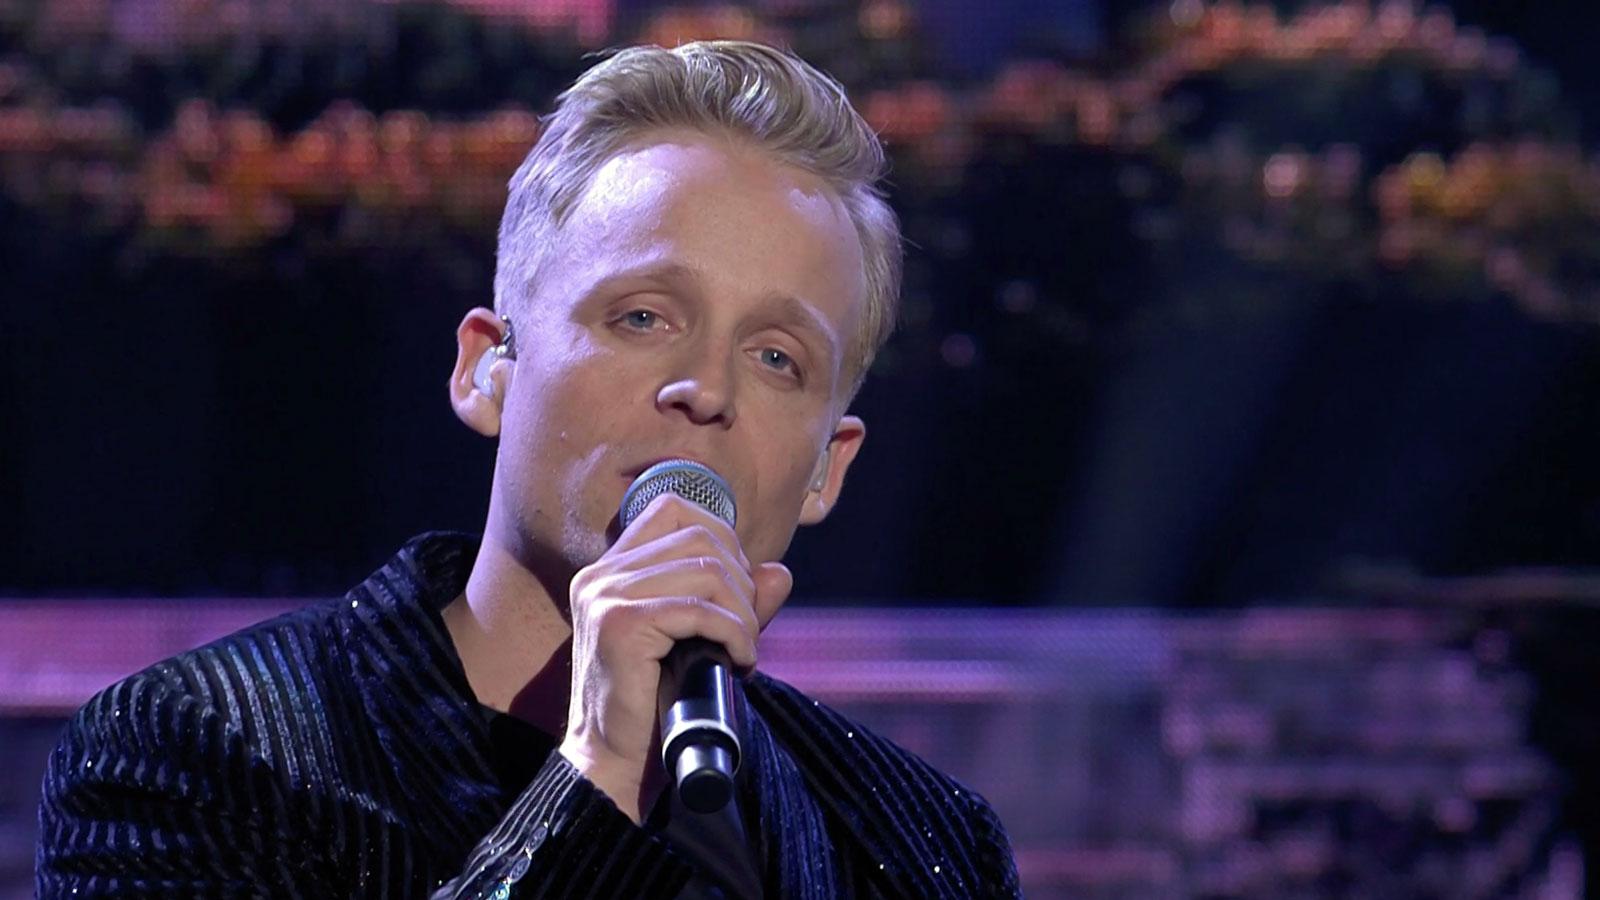 Andreas Weise sjunger ”She” i finalen av ”Stjärnornas stjärna”.